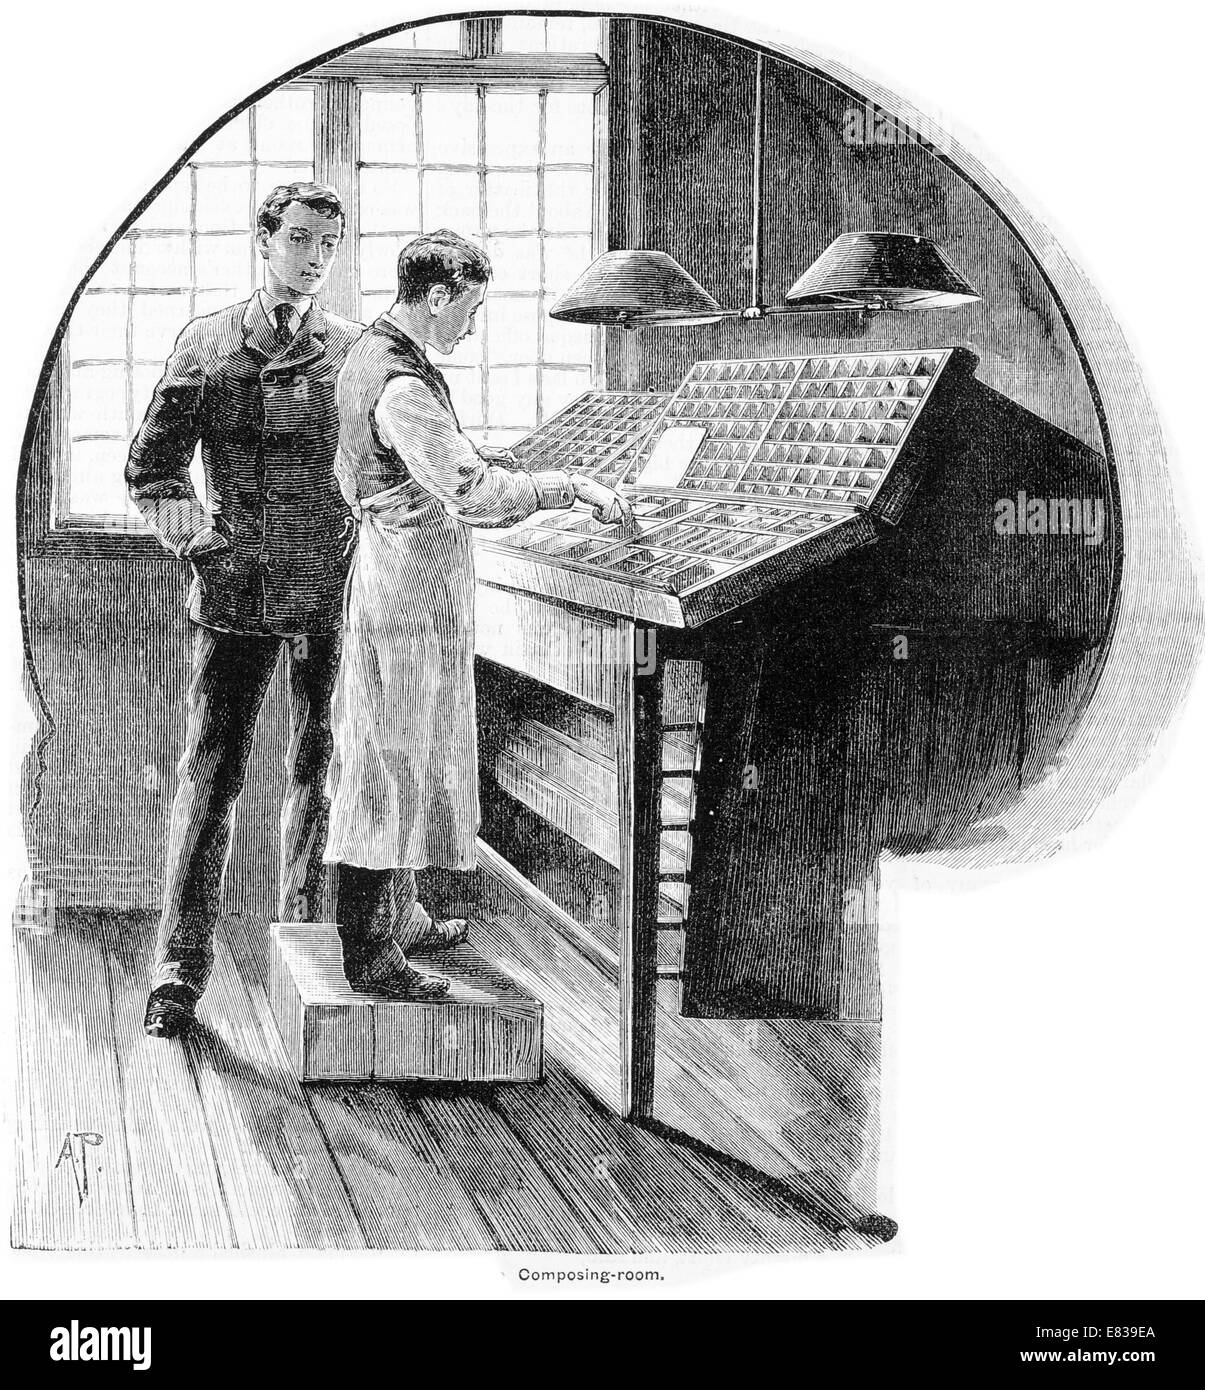 Ajuste tipo componiendo habitación circa 1885 Foto de stock